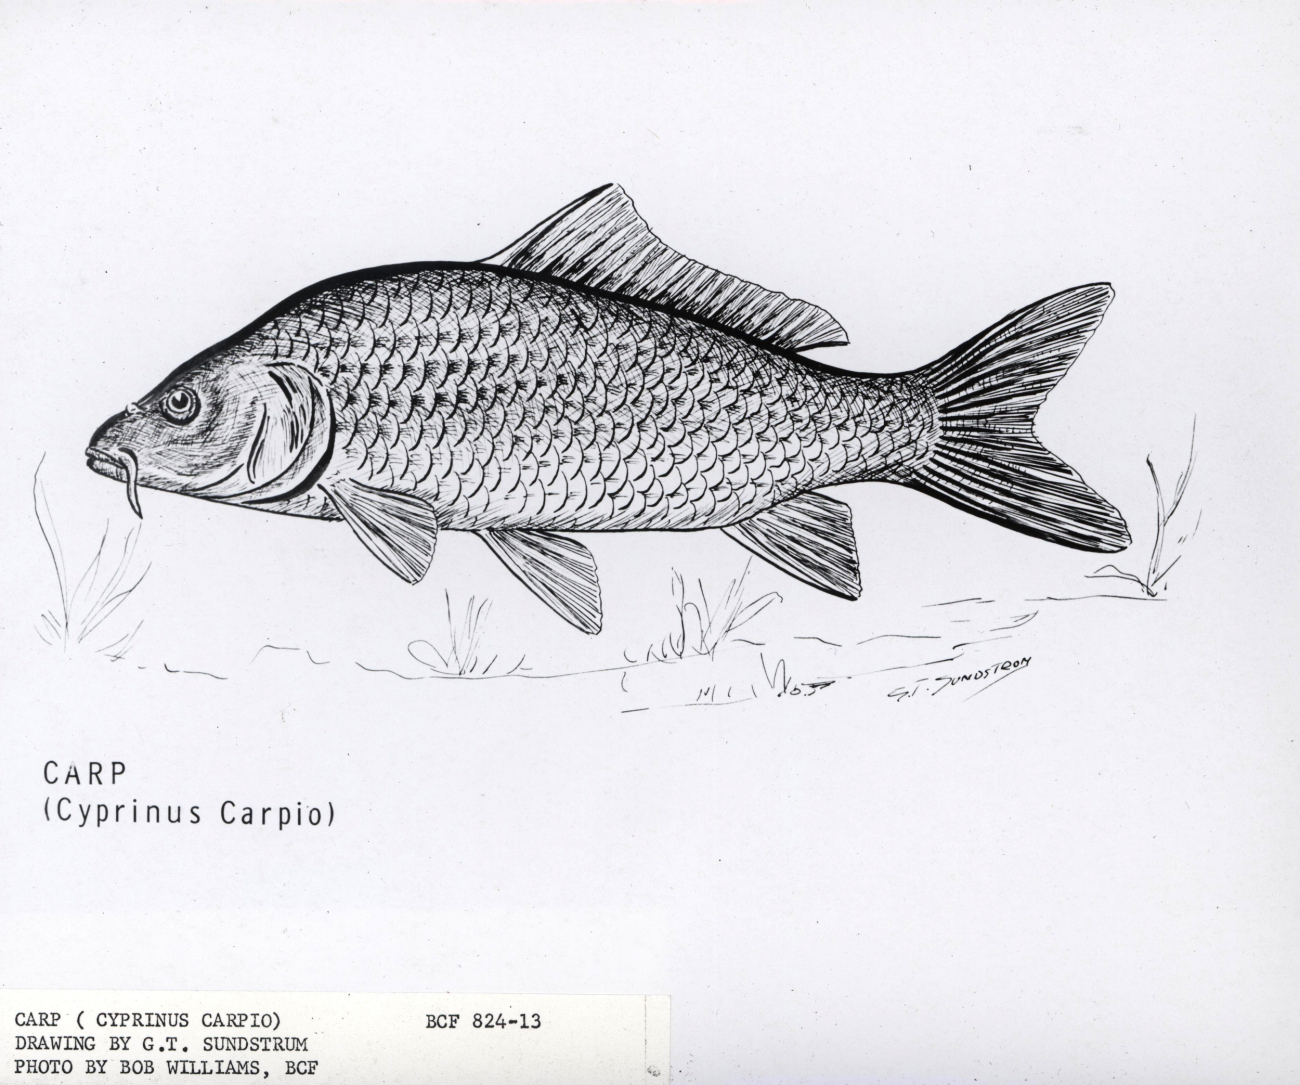 Artwork - Carp (Cyprinus carpio) by G